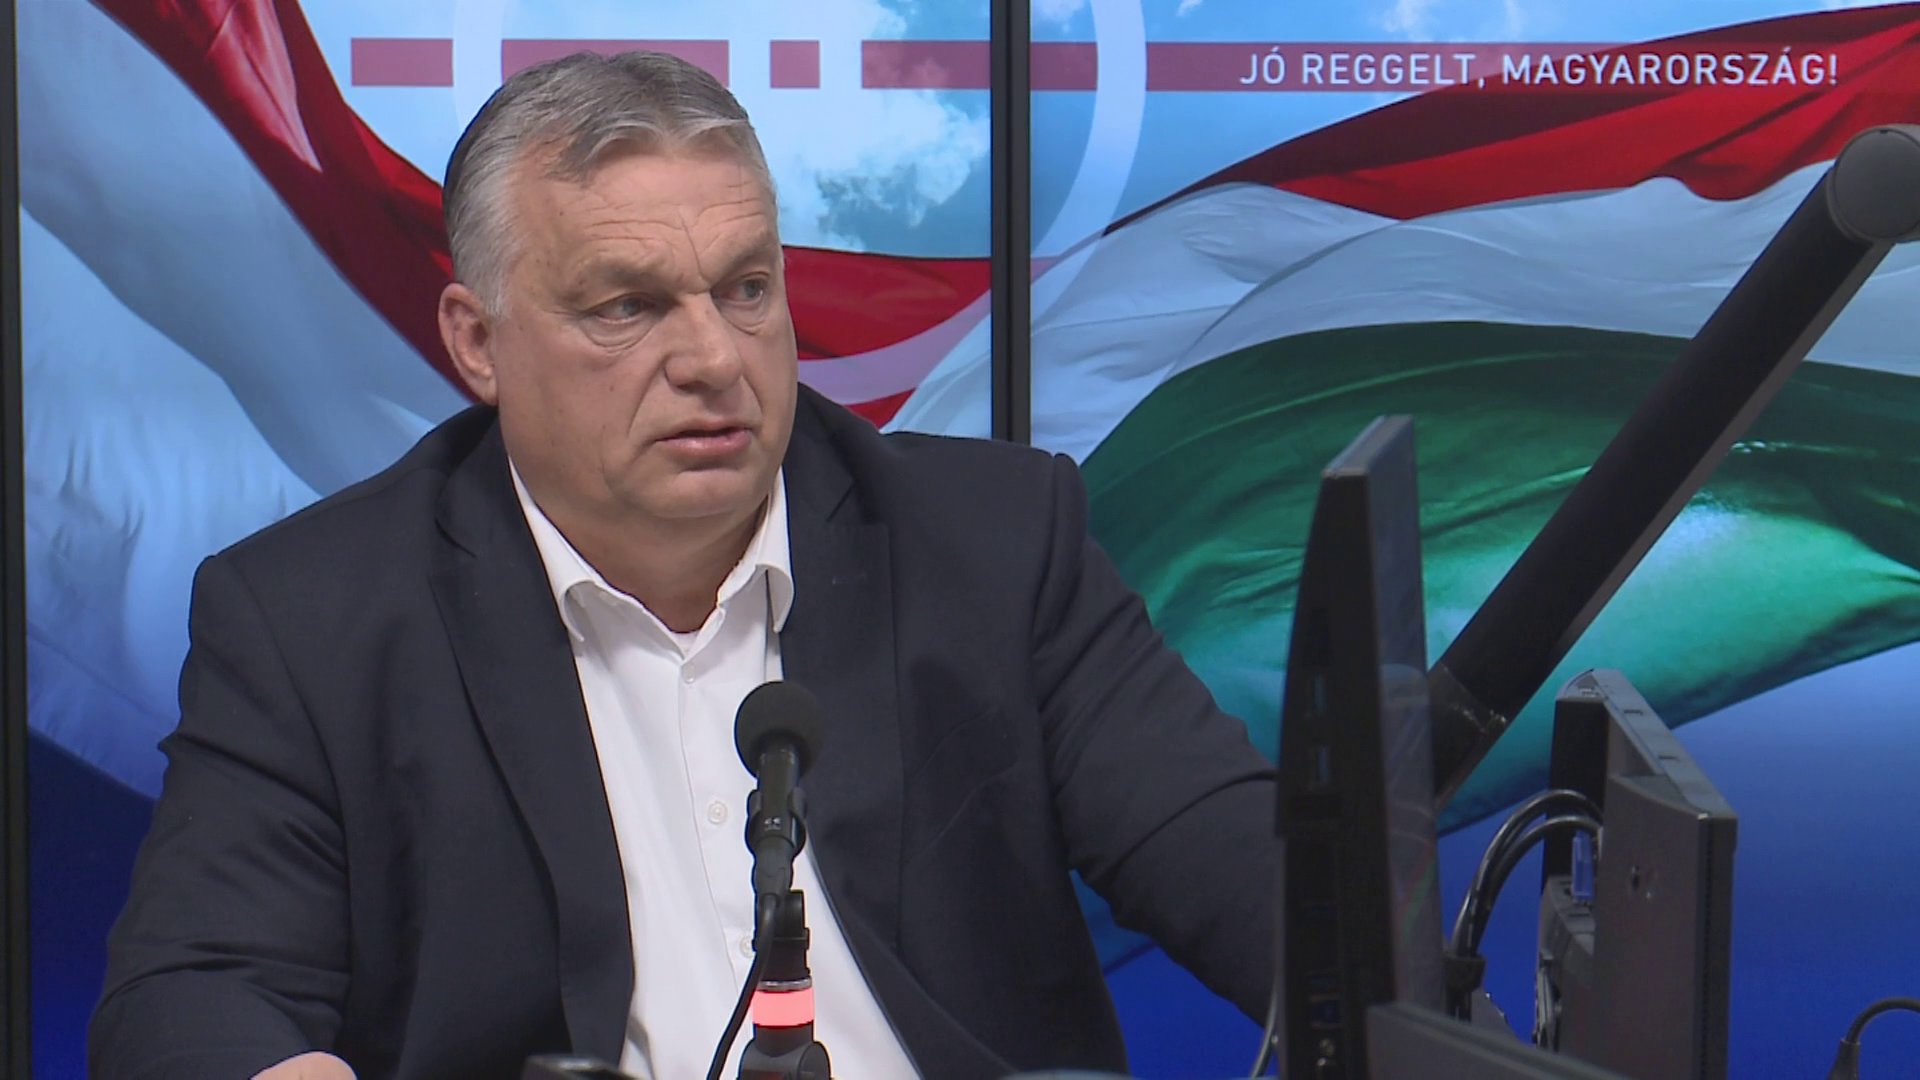 Orbán Viktor: Nem fogadhatjuk el az indokolatlan áremeléseket, ezek ellen fel kell lépni